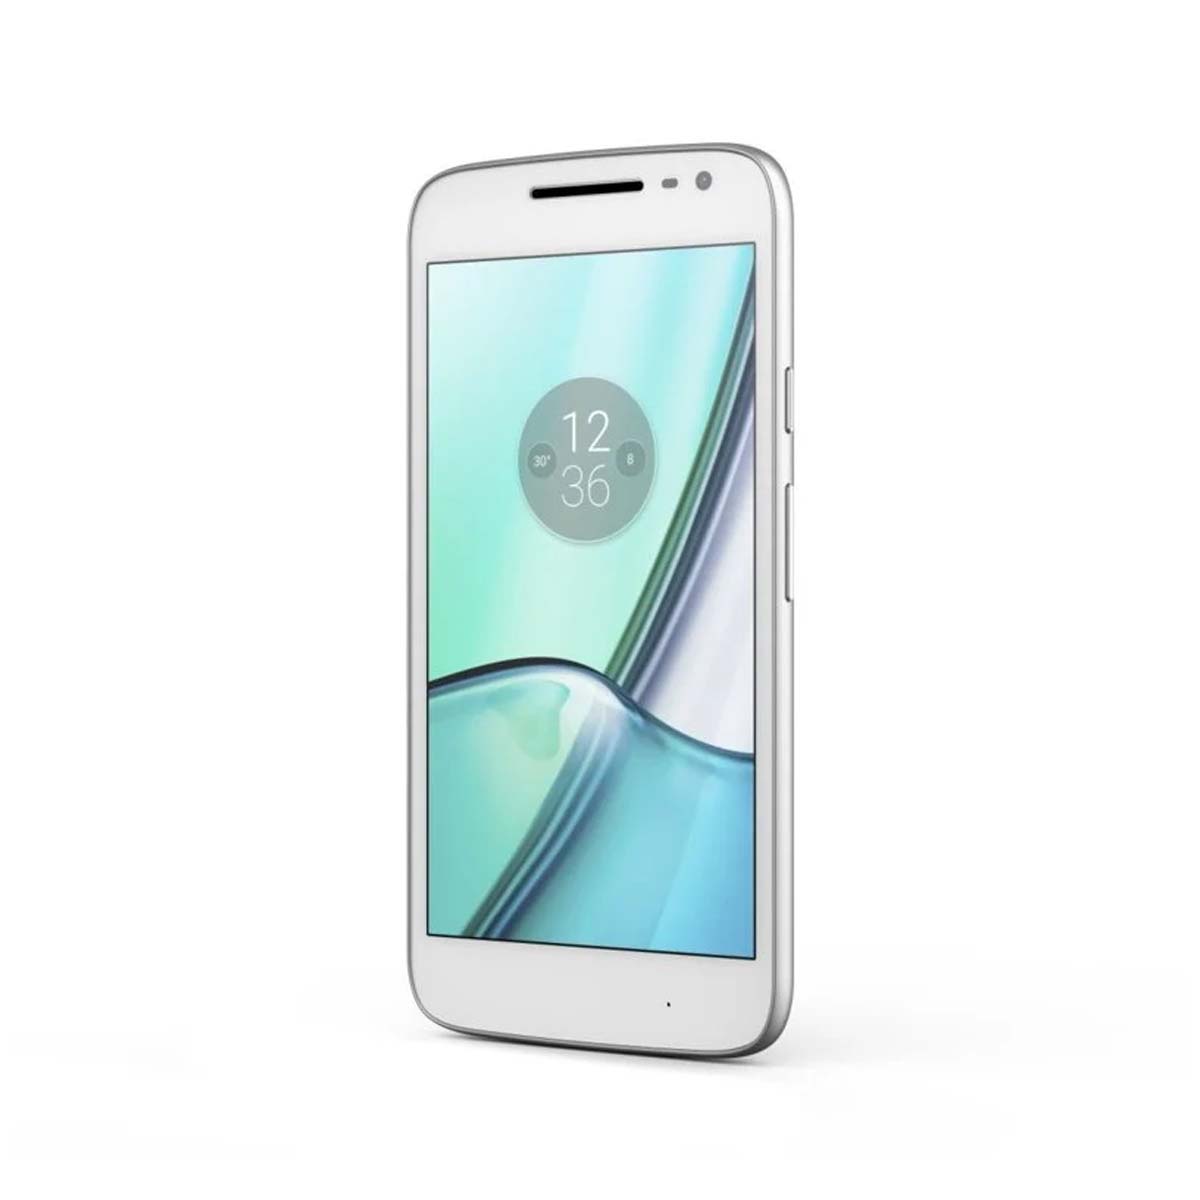 Motorola Moto G4 Play Dual Xt1601 16gb 2gb Ram - Seminovo